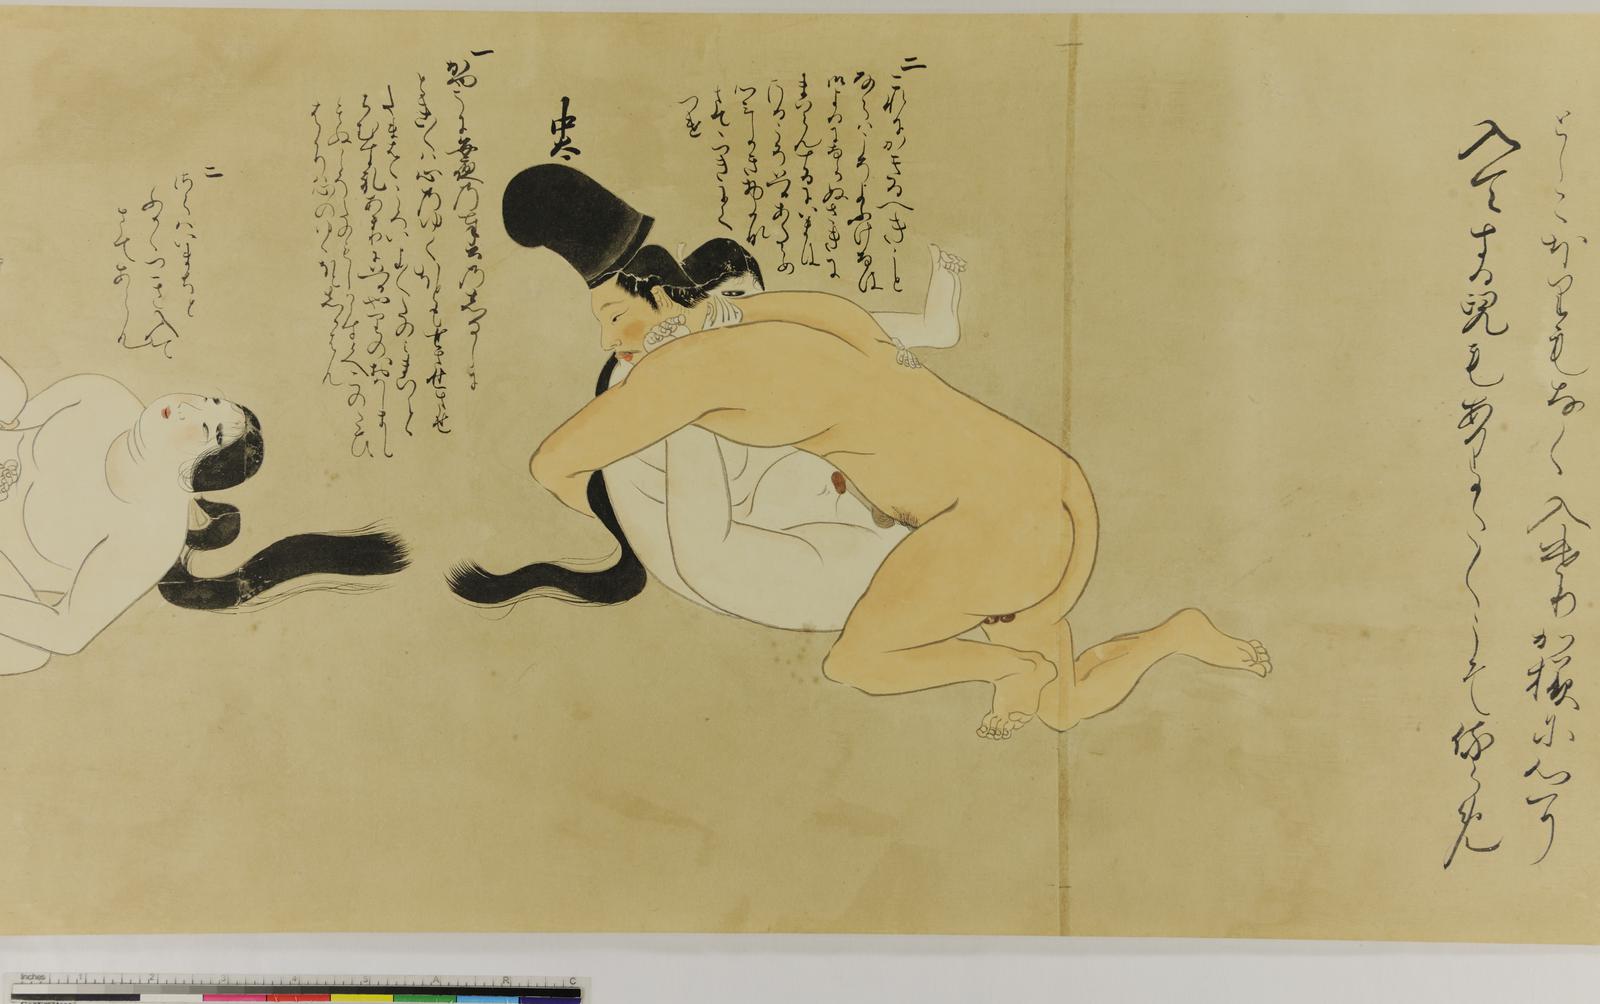 File:Chigo no sōshi 稚児之草紙 (Book of Acolytes) (BM 2013,3001.1 12).jpg - Wikimedia Commons